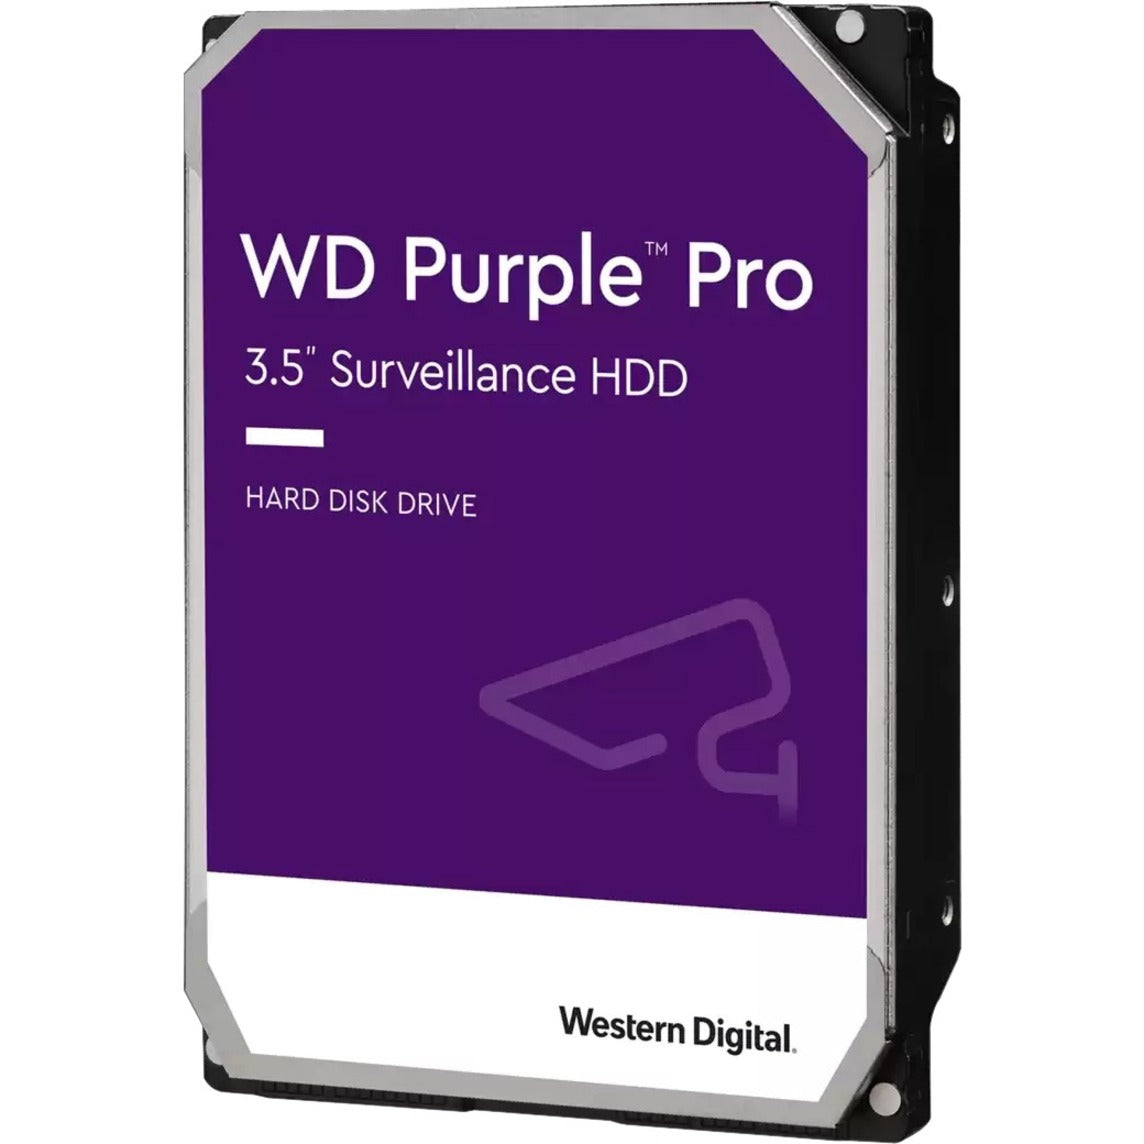 西数（Western Digital） 紫色专业 10TB 硬盘驱动器，7200 转/分，256MB 缓冲区，5 年保修